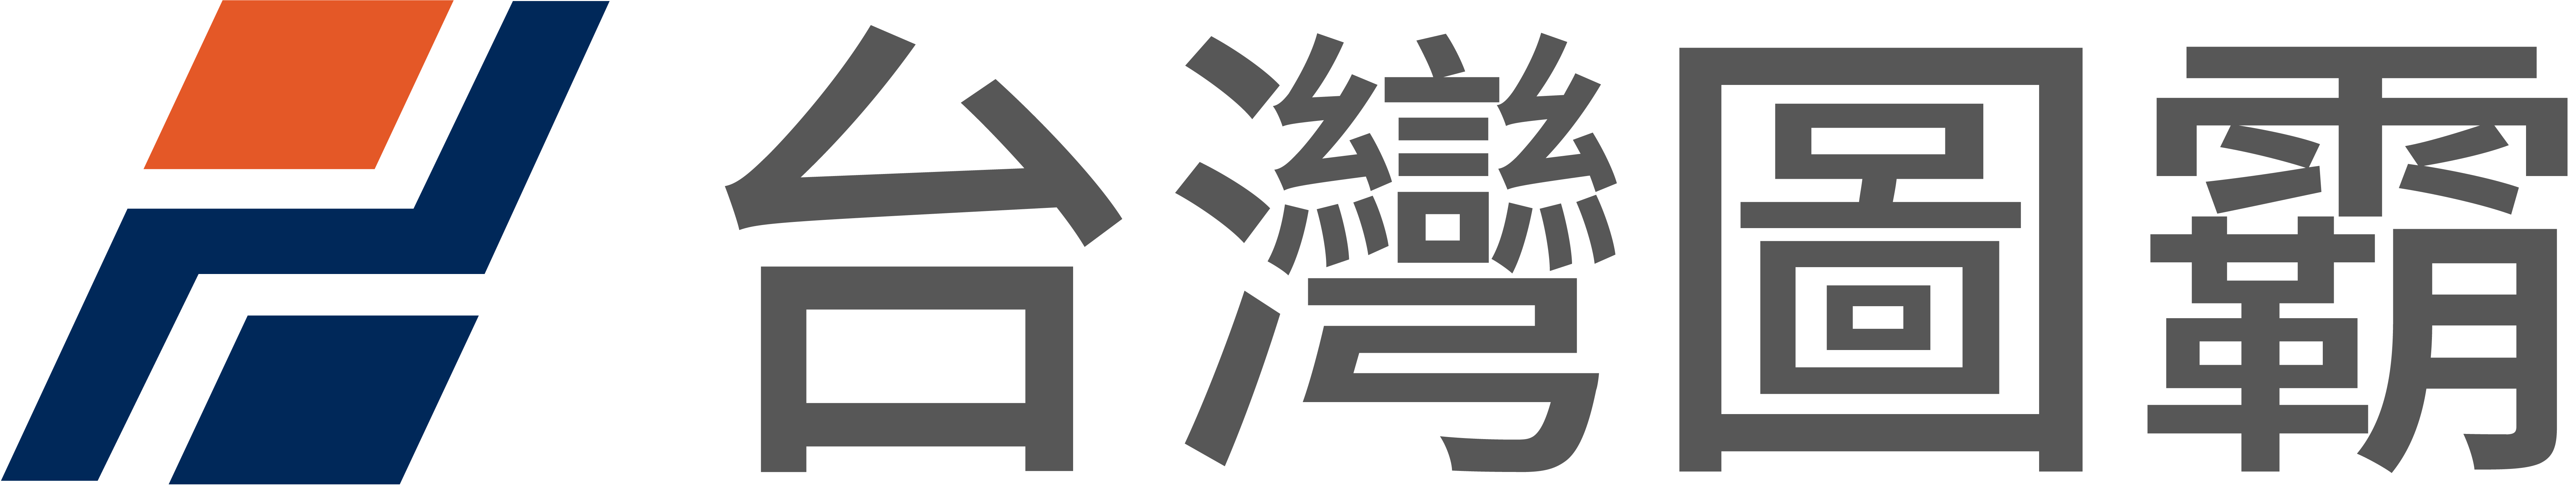 研鼎智能股份有限公司-Logo